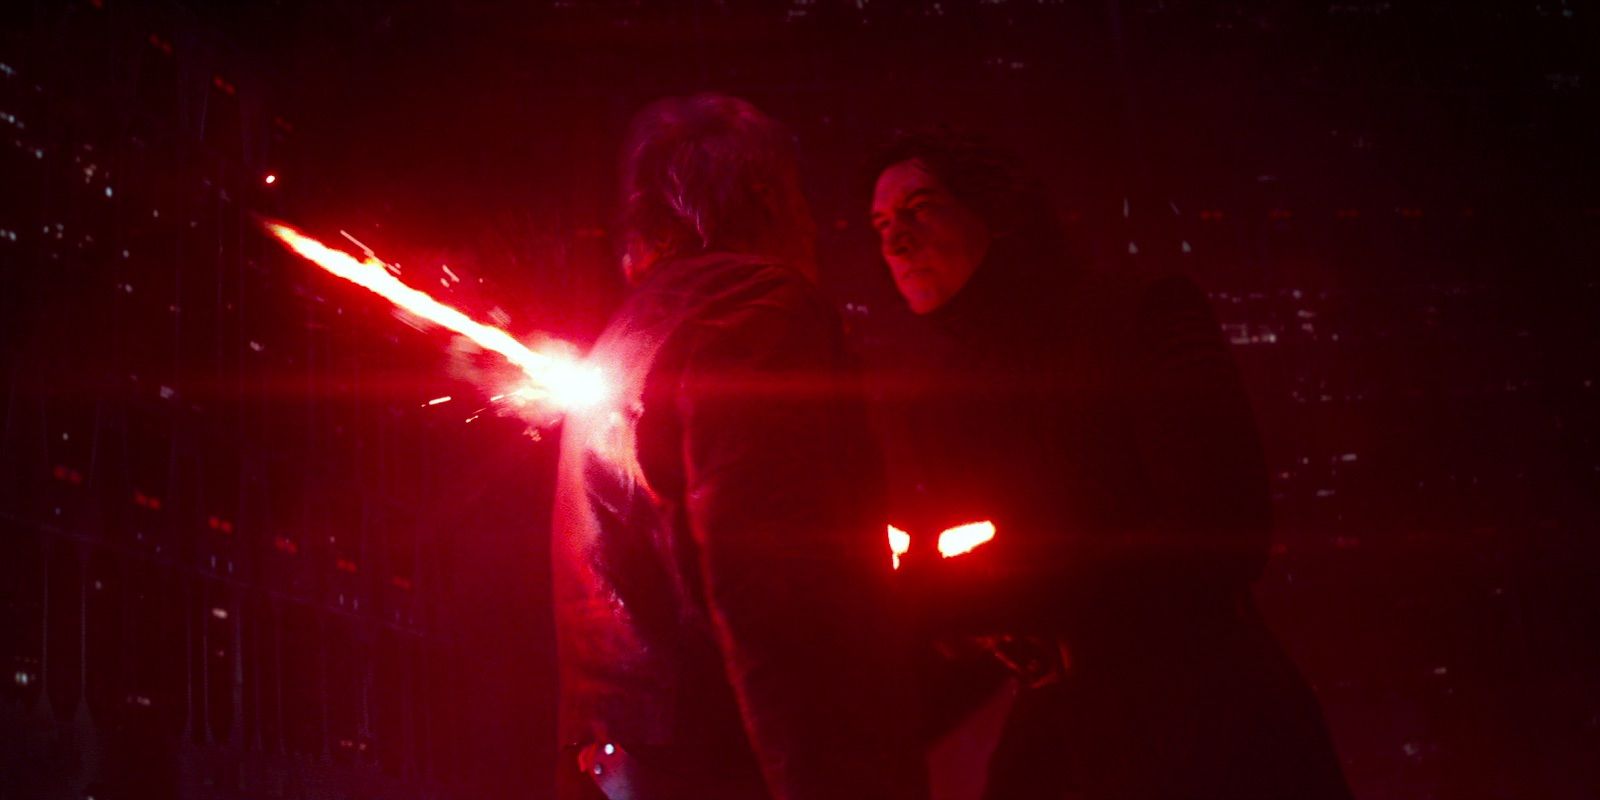 Star Wars Rise of Skywalker 10 Fan Theories Explaining Why Anakin Skywalker Should Return